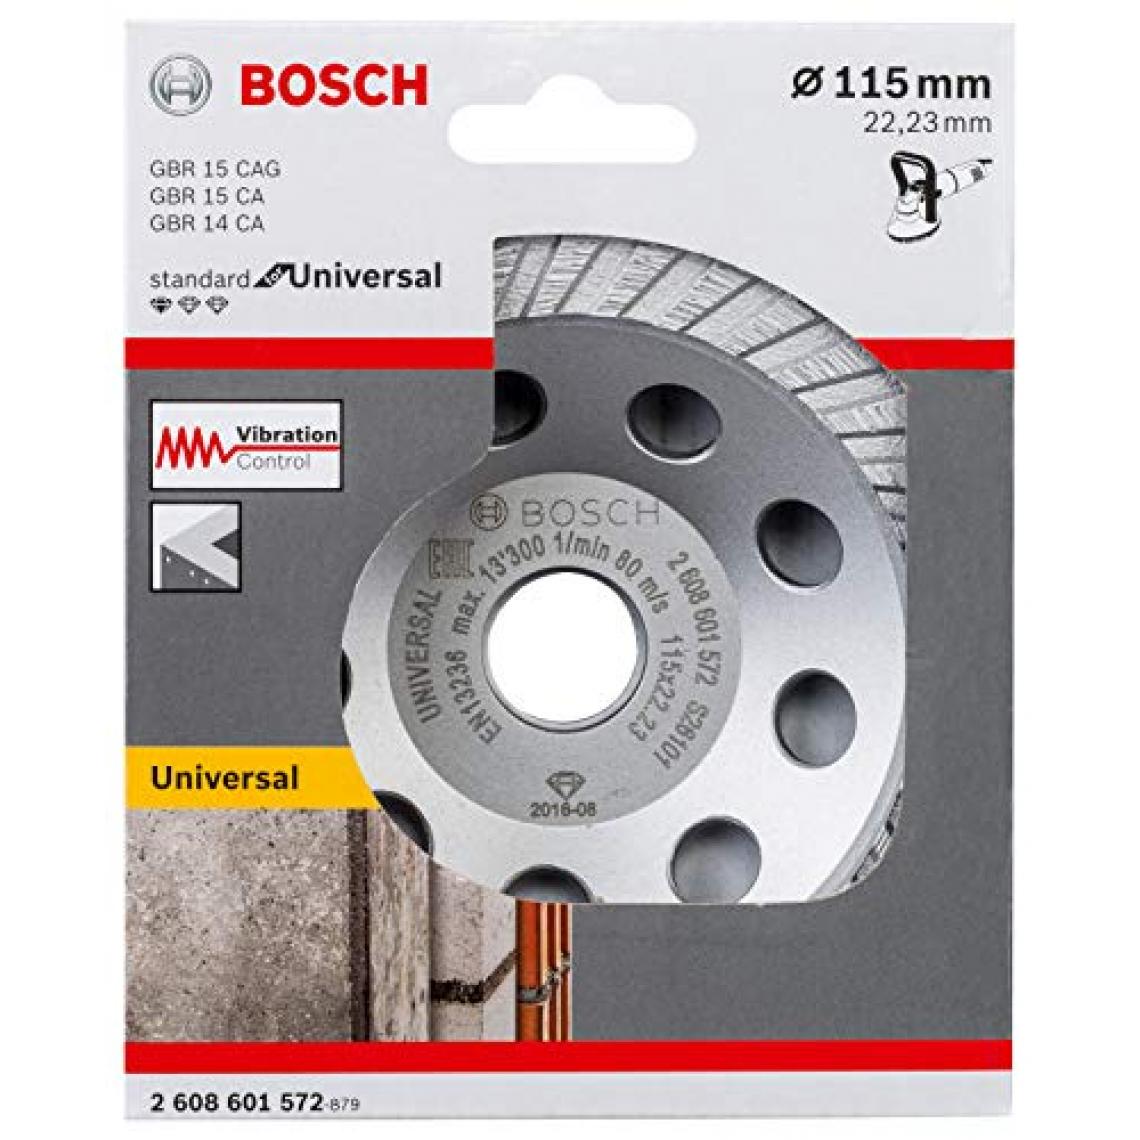 Bosch - 2608601572 Meule Diamant Standard for Universal (pour Béton et Pierre Naturelle, 115 x 22,23 x 5 mm, Accessoires pour Meuleuse Angulaire) - Accessoires ponçage